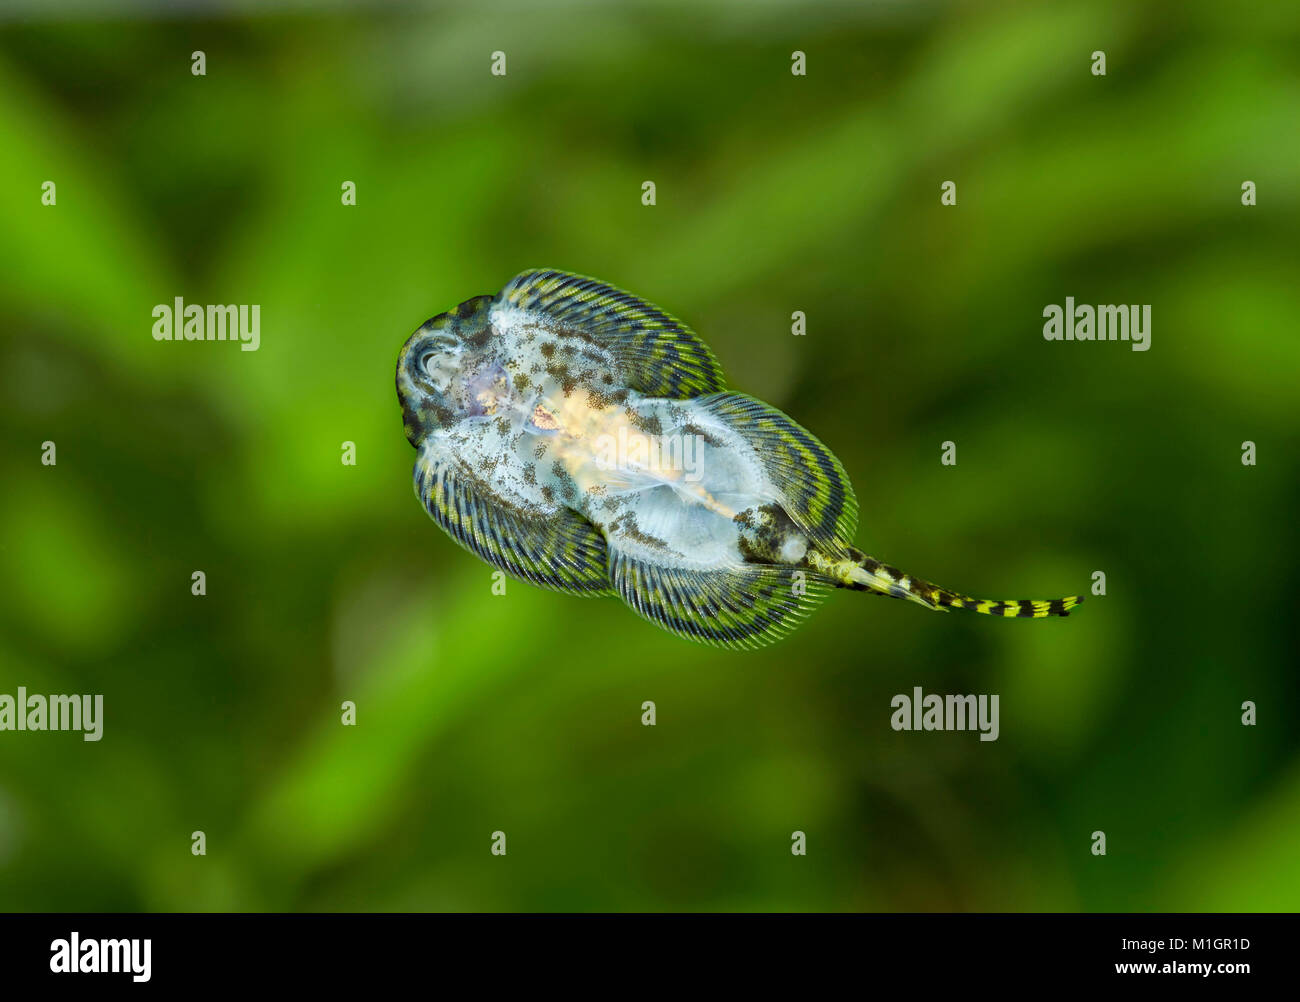 Fluss Loach, Lizardfish (balitoridae) in einem Aquarium Festhalten an Glas. Bauchflossen für Festhalten an Felsen verwendet, geändert. Stockfoto